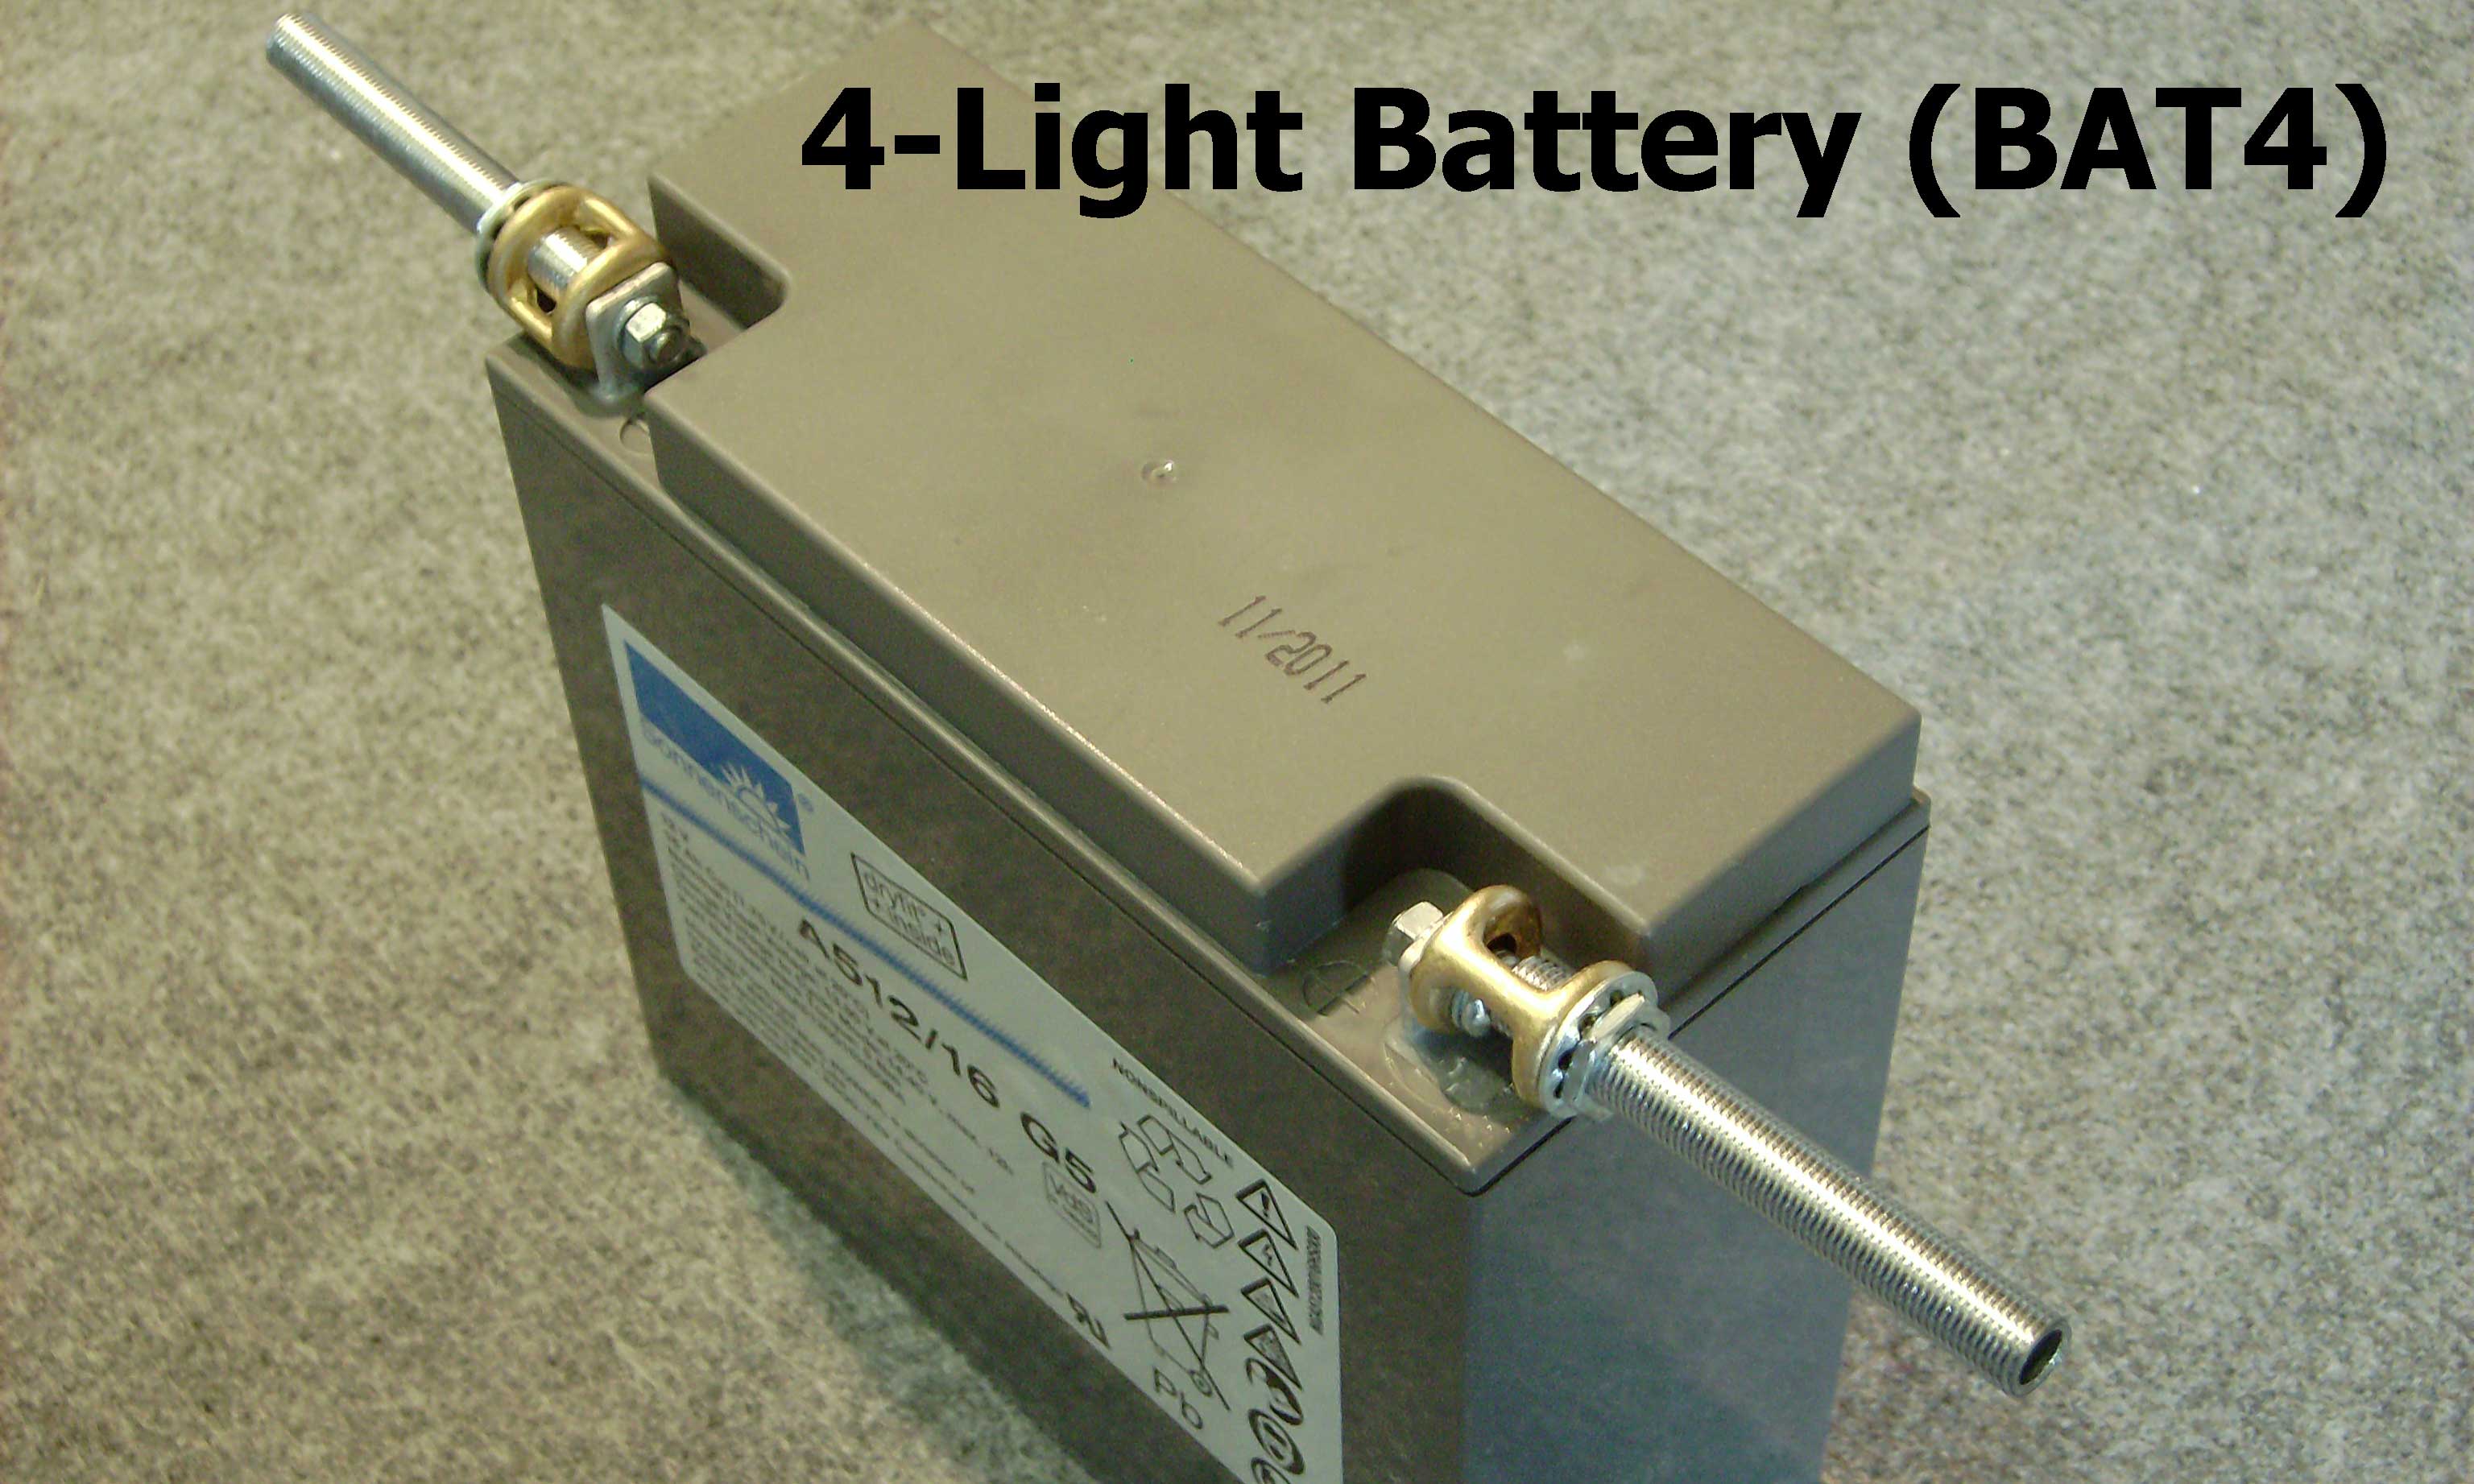 4-light battery